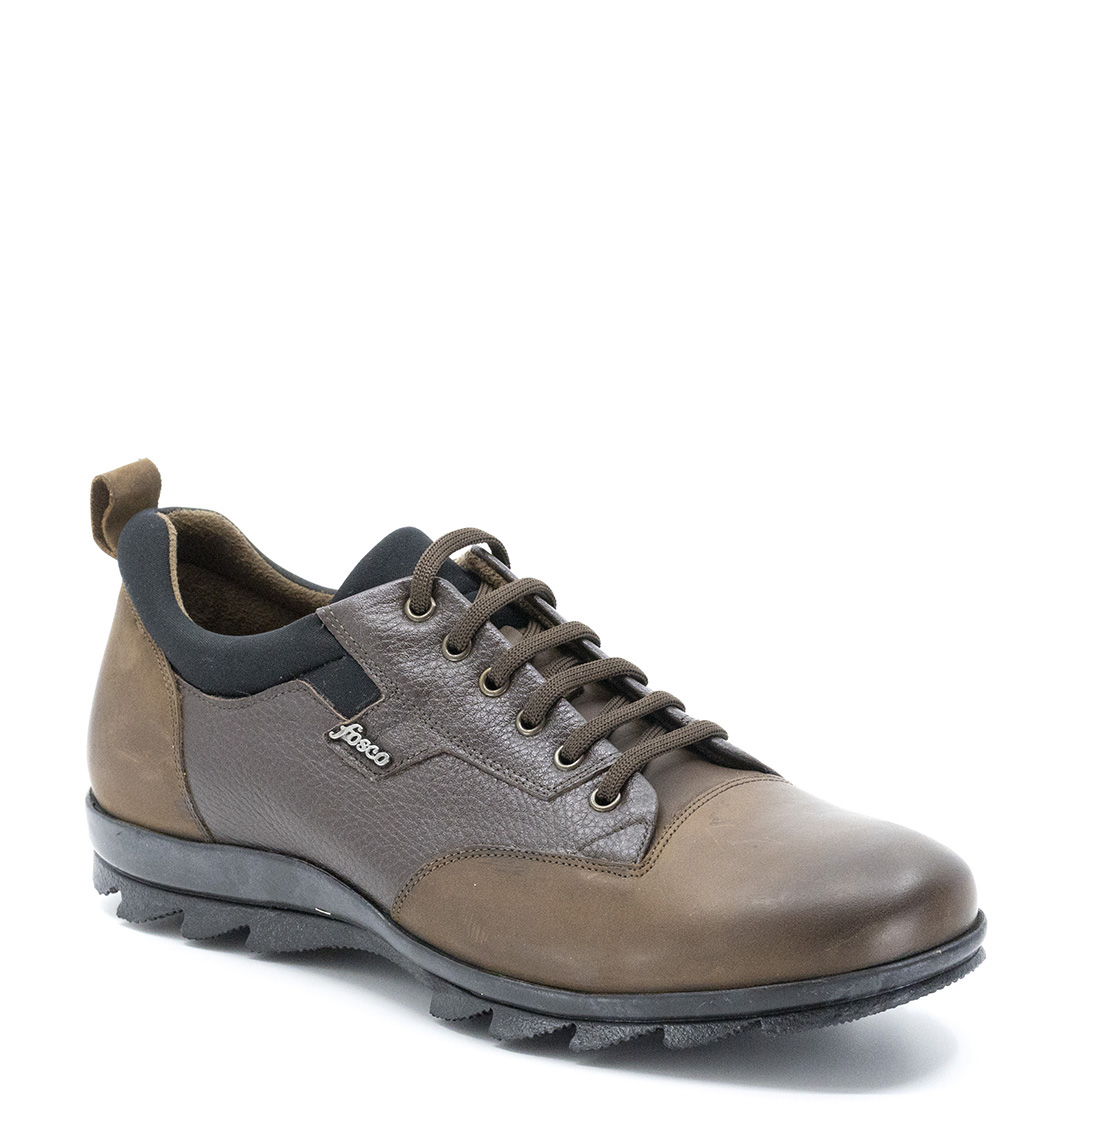 Bağcıklı Hakiki Deri Kauçuk Taban Sıcak Astar Kışlık Erkek Ayakkabı, Renk: Kahverengi, Beden: 39